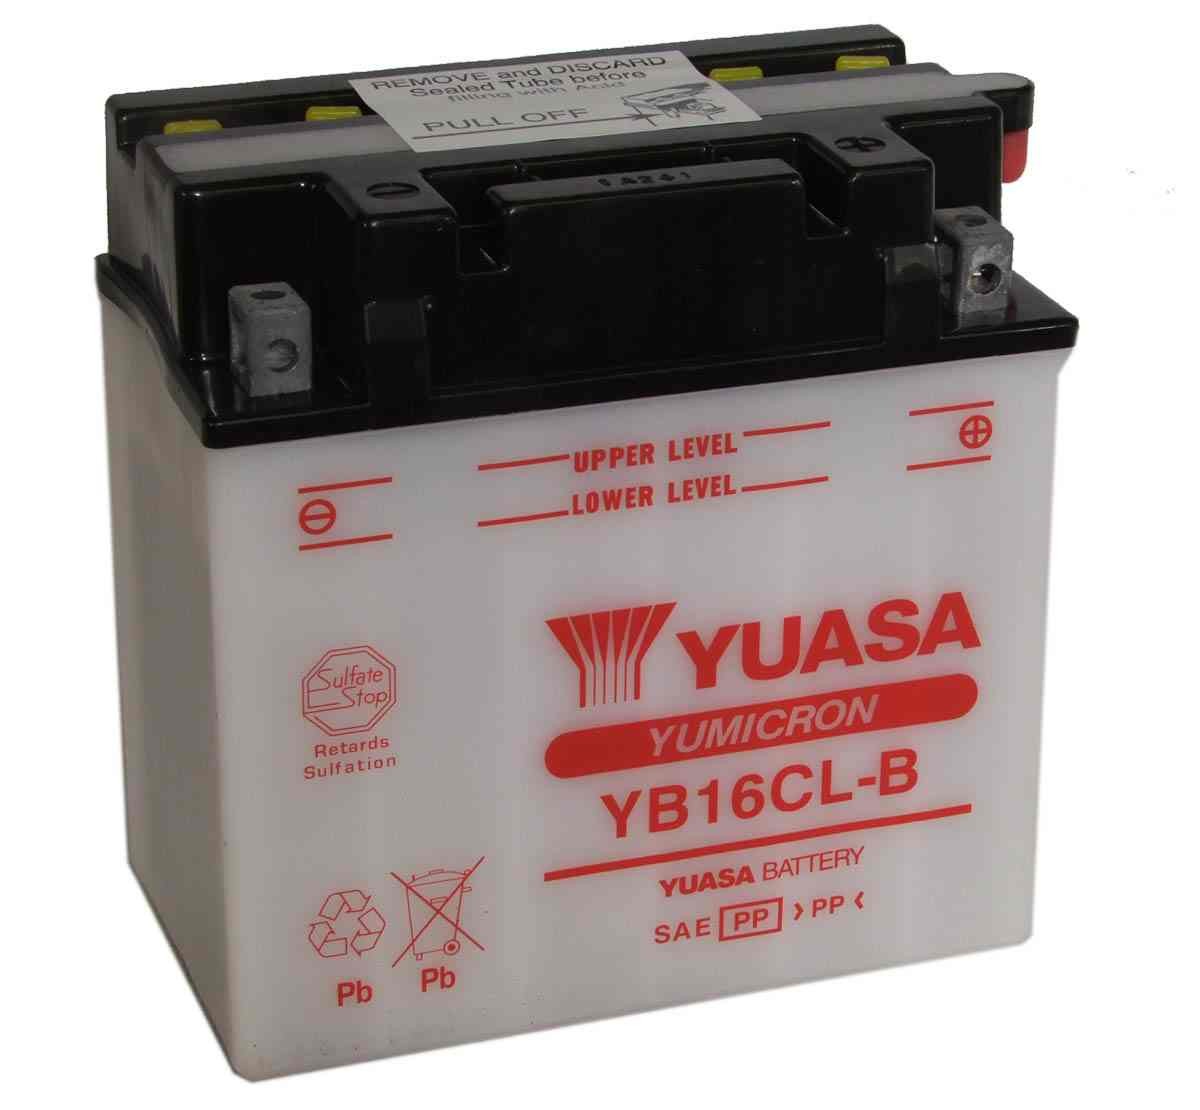 Bateria para moto o ciclomotor marca YUASA modelo YB16CL-B de 12v 19Ah